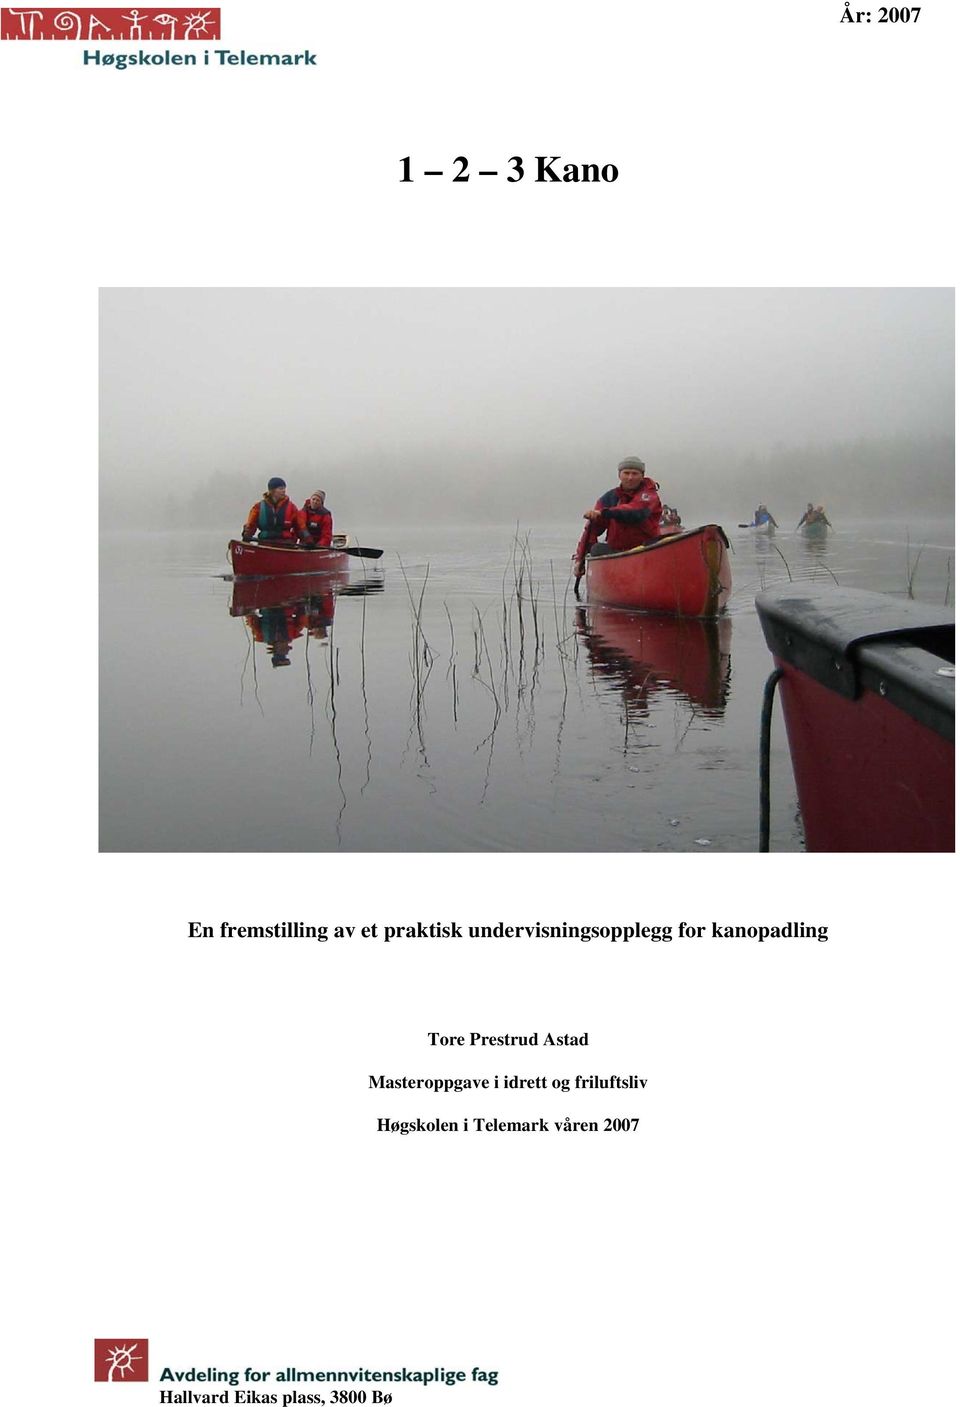 1 2 3 Kano. En fremstilling av et praktisk undervisningsopplegg for  kanopadling. Tore Prestrud Astad. Masteroppgave i idrett og friluftsliv -  PDF Free Download